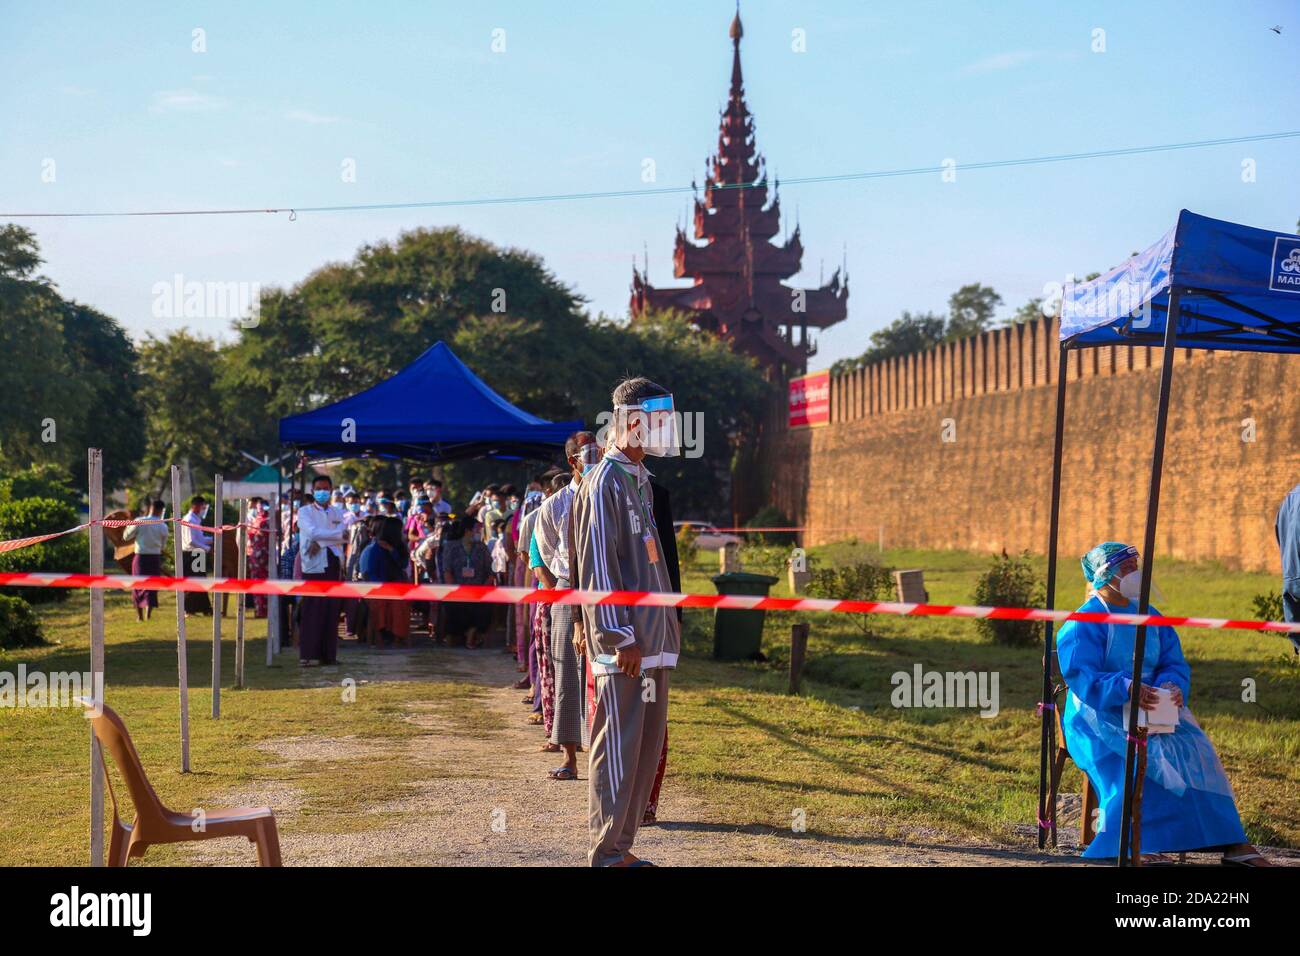 Les citoyens du Myanmar se sont rendus aux urnes pour voter lors de la deuxième élection démocratique depuis la fin du régime militaire, la Ligue nationale pour la démocratie (NLD) Aung San Suu Kyi s’attendait à remporter les élections. Banque D'Images